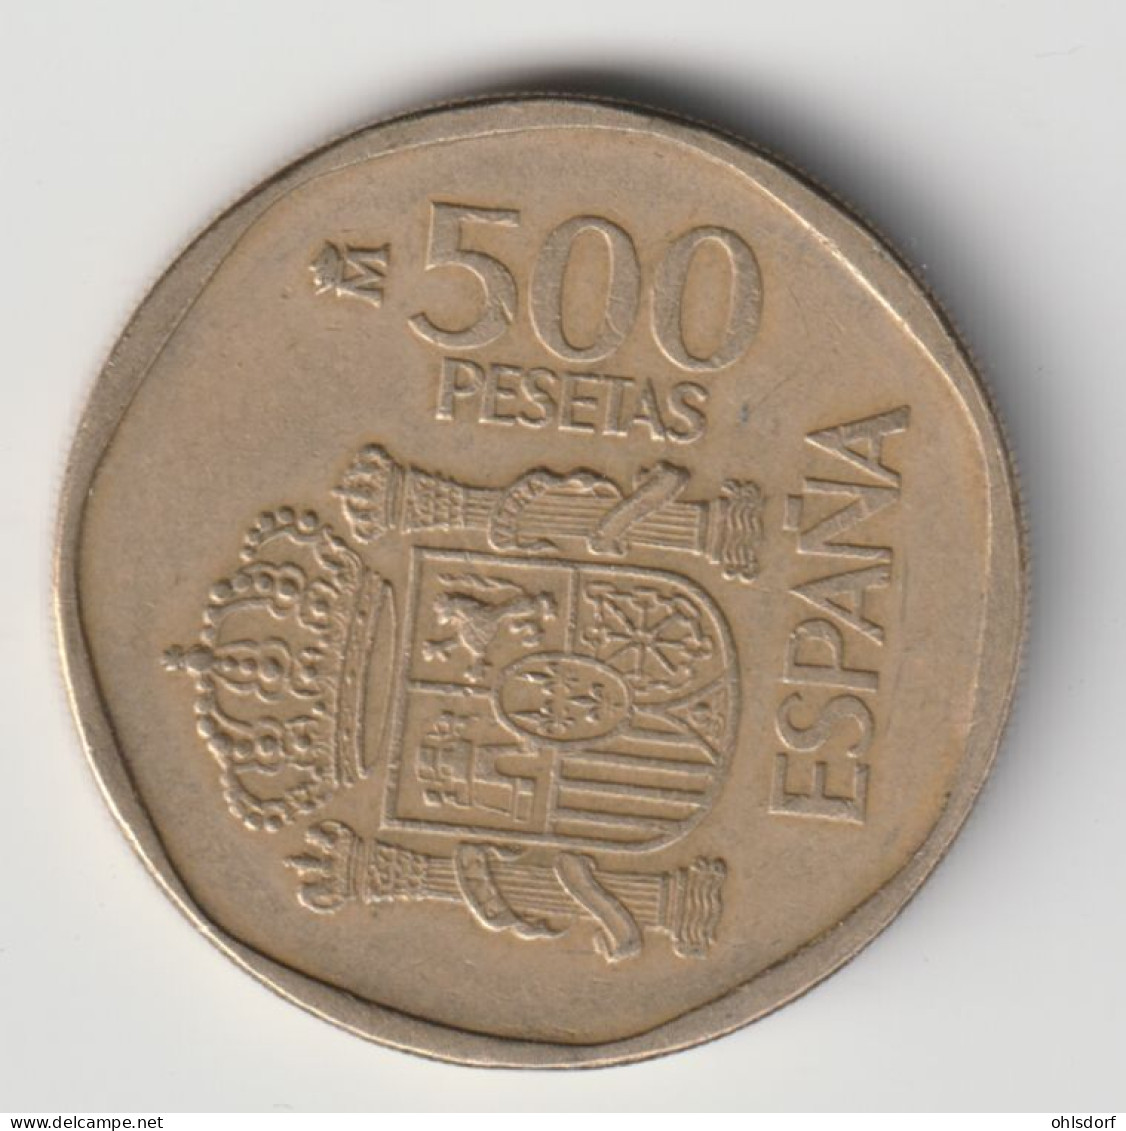 ESPANA 1989: 500 Pesetas, KM 831 - 500 Pesetas